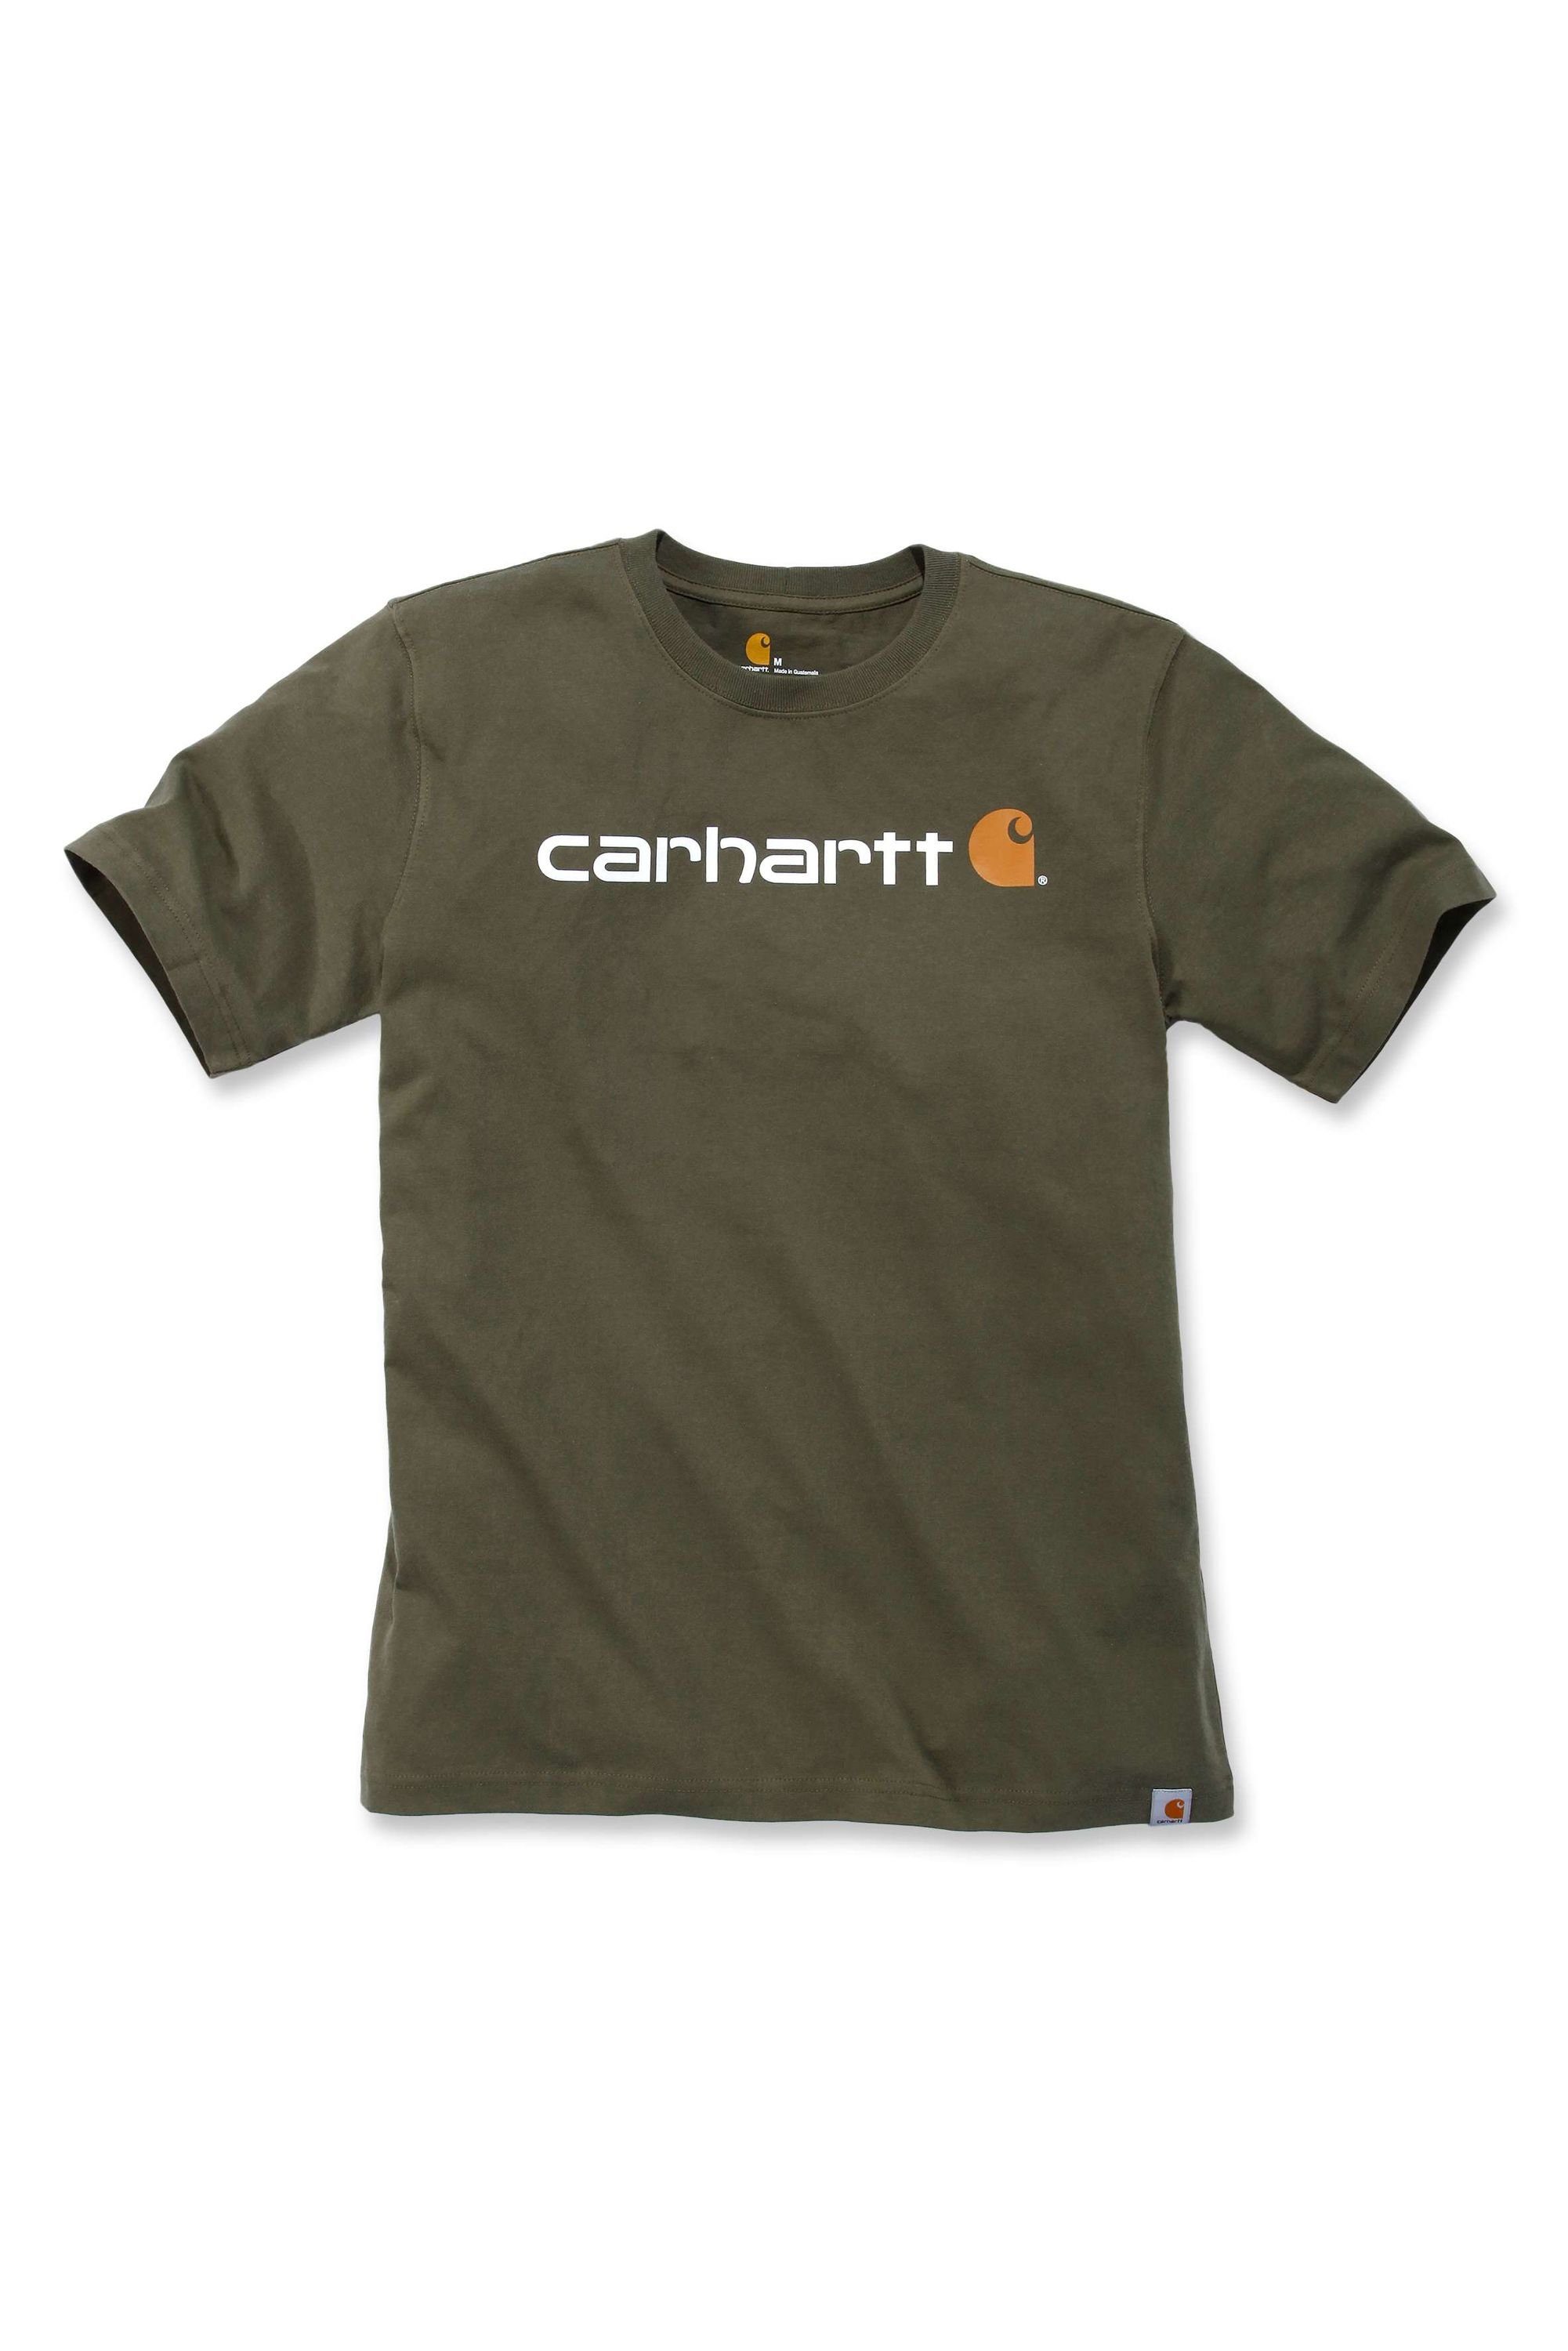 T-Shirt 103361 Carhartt LOGO auf CORE heather Brust T-SHIRT S/S der Logo (1-tlg) Carhartt carbon